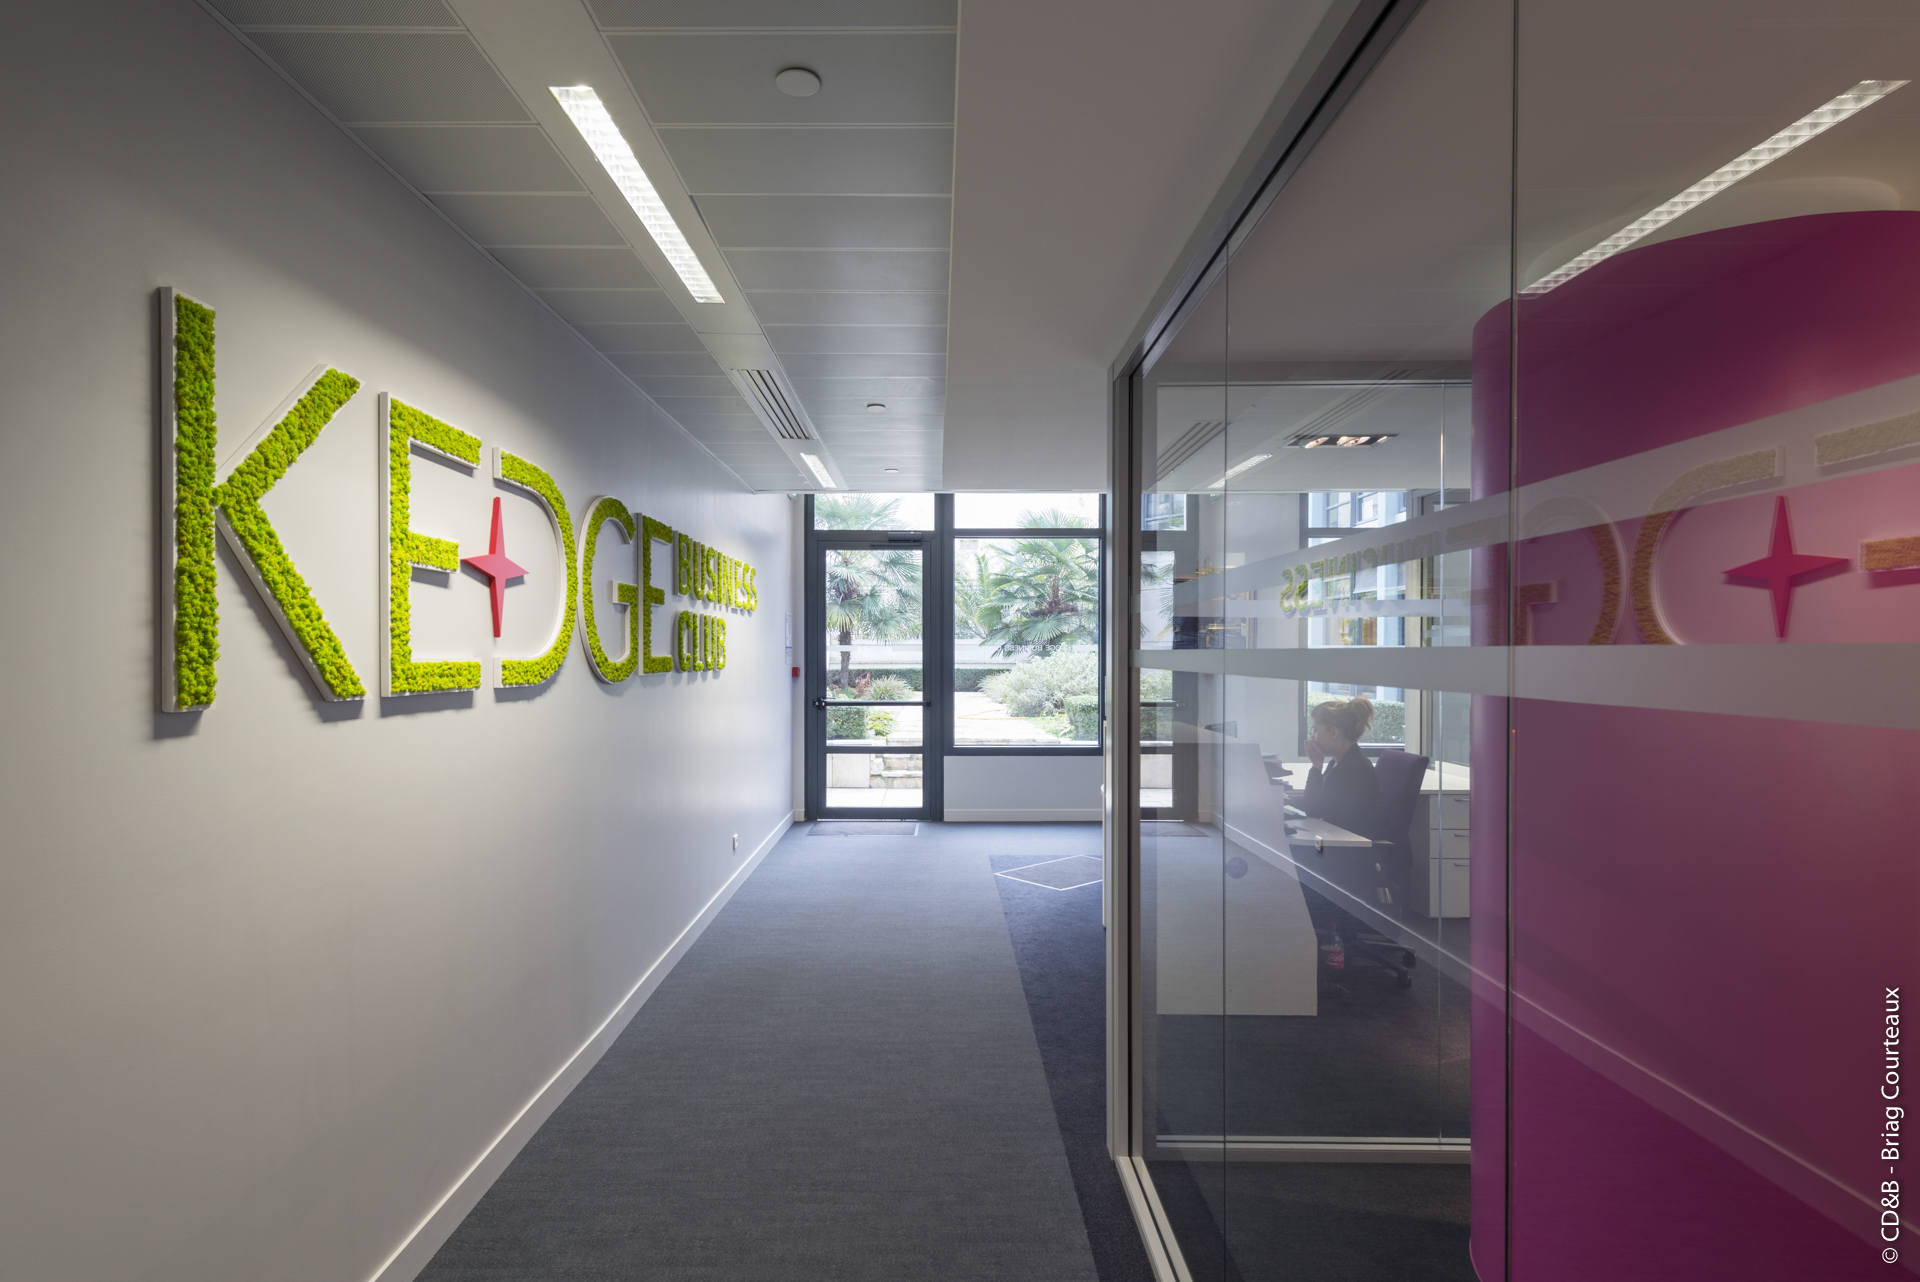 Conseil, aménagement, conception et réalisation des espaces de la Kedge Business School par CDB, Meet you there.